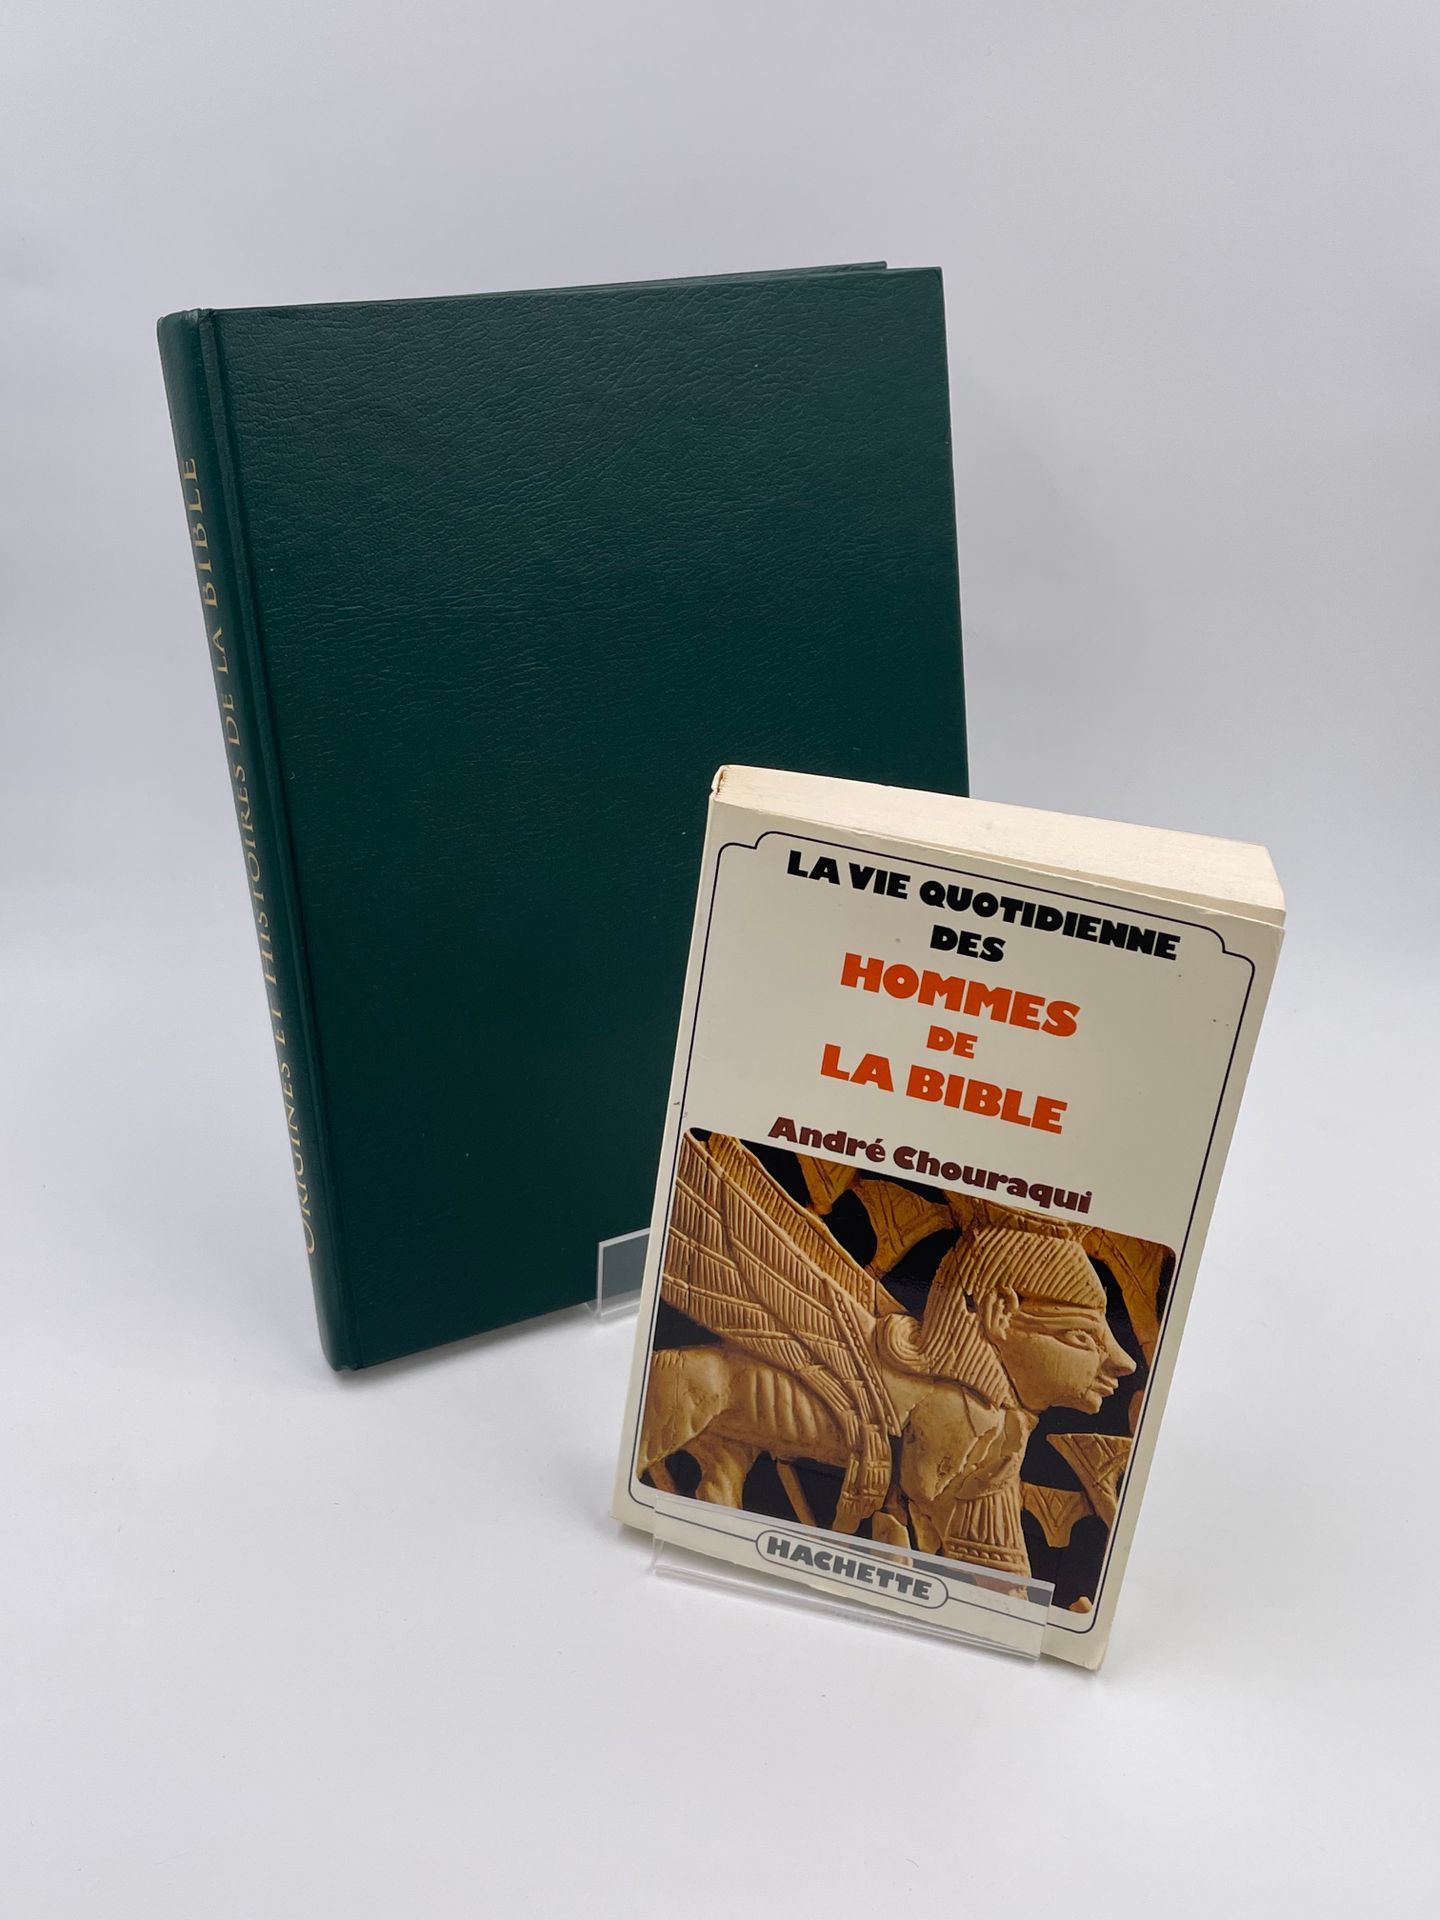 Null 2 Volumes: 

- "LA VIE QUOTIDIENNE DES HOMMES DE LA BIBLE", André Chouraqui&hellip;